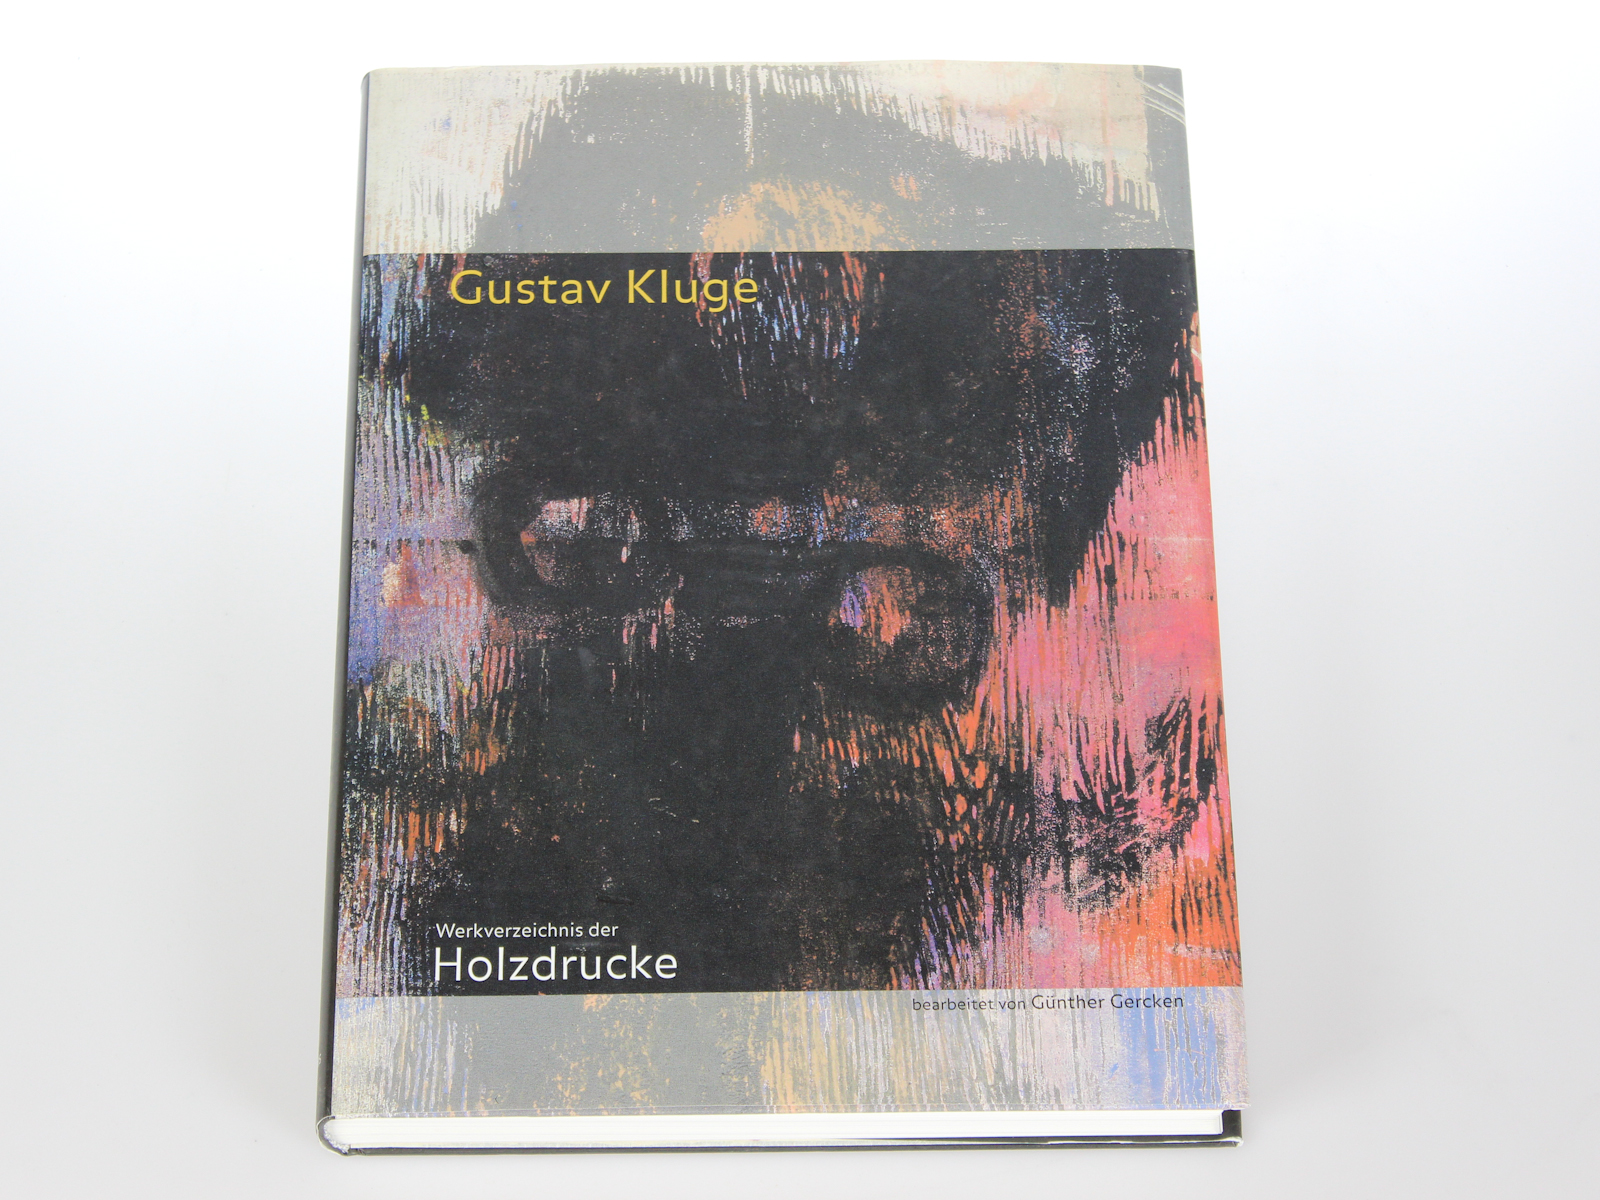 Gercken, Gnther und Gustav (Ill.) Kluge:  Gustav Kluge - Werkverzeichnis der Holzdrucke : 1984 - 2000. bearb. von. [Hrsg. Kunsthalle Rostock ...] 